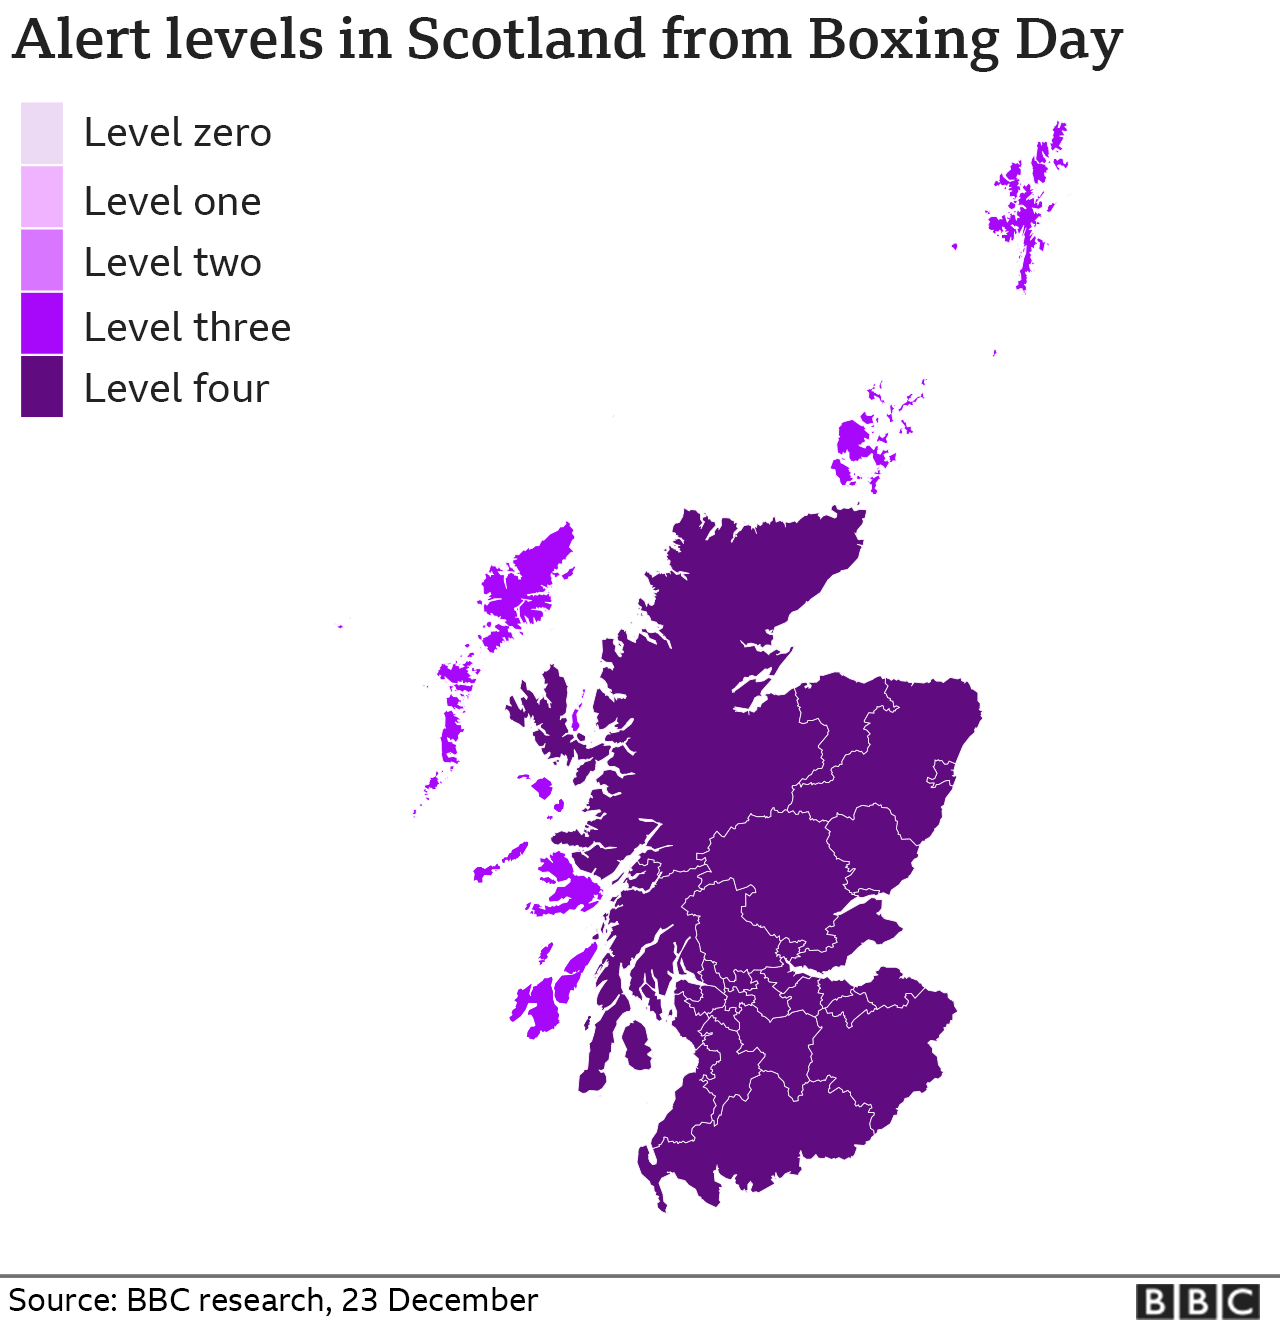 уровни предупреждения в Шотландии со дня бокса